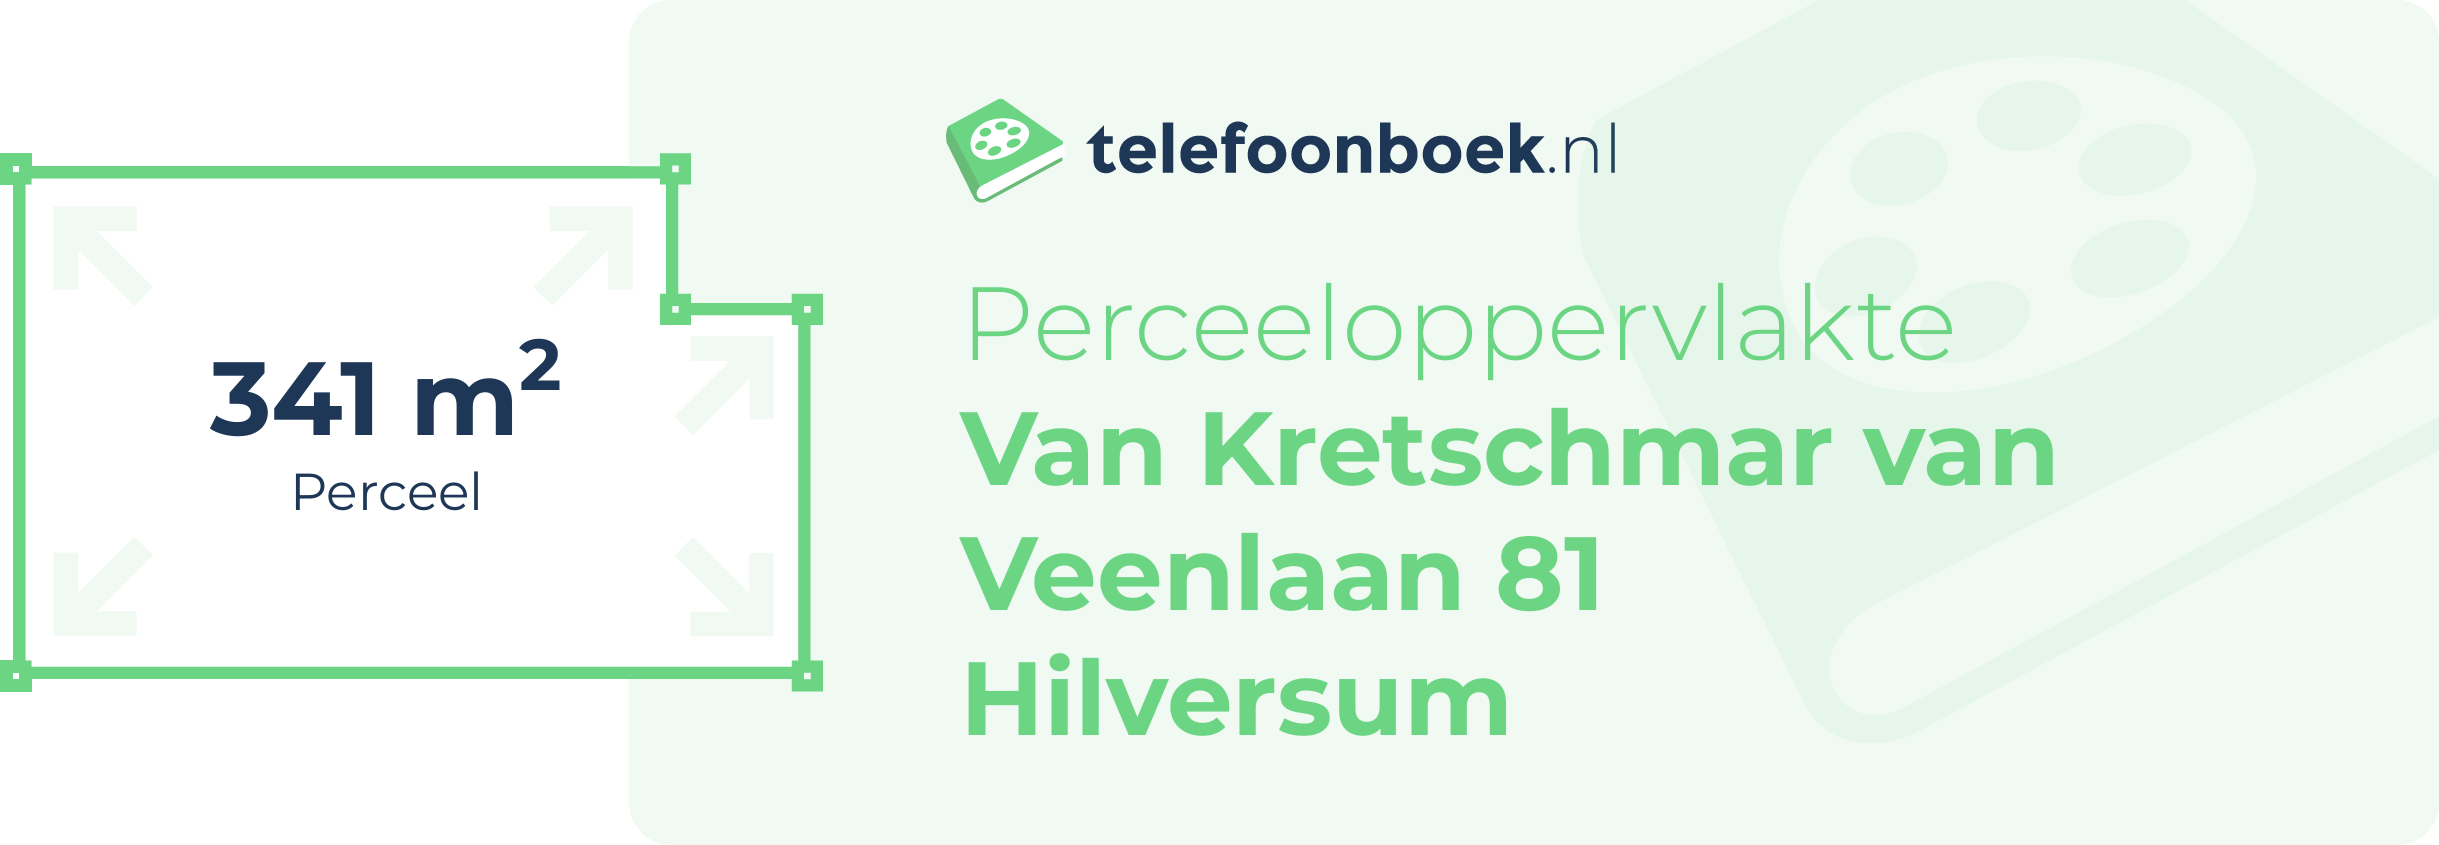 Perceeloppervlakte Van Kretschmar Van Veenlaan 81 Hilversum